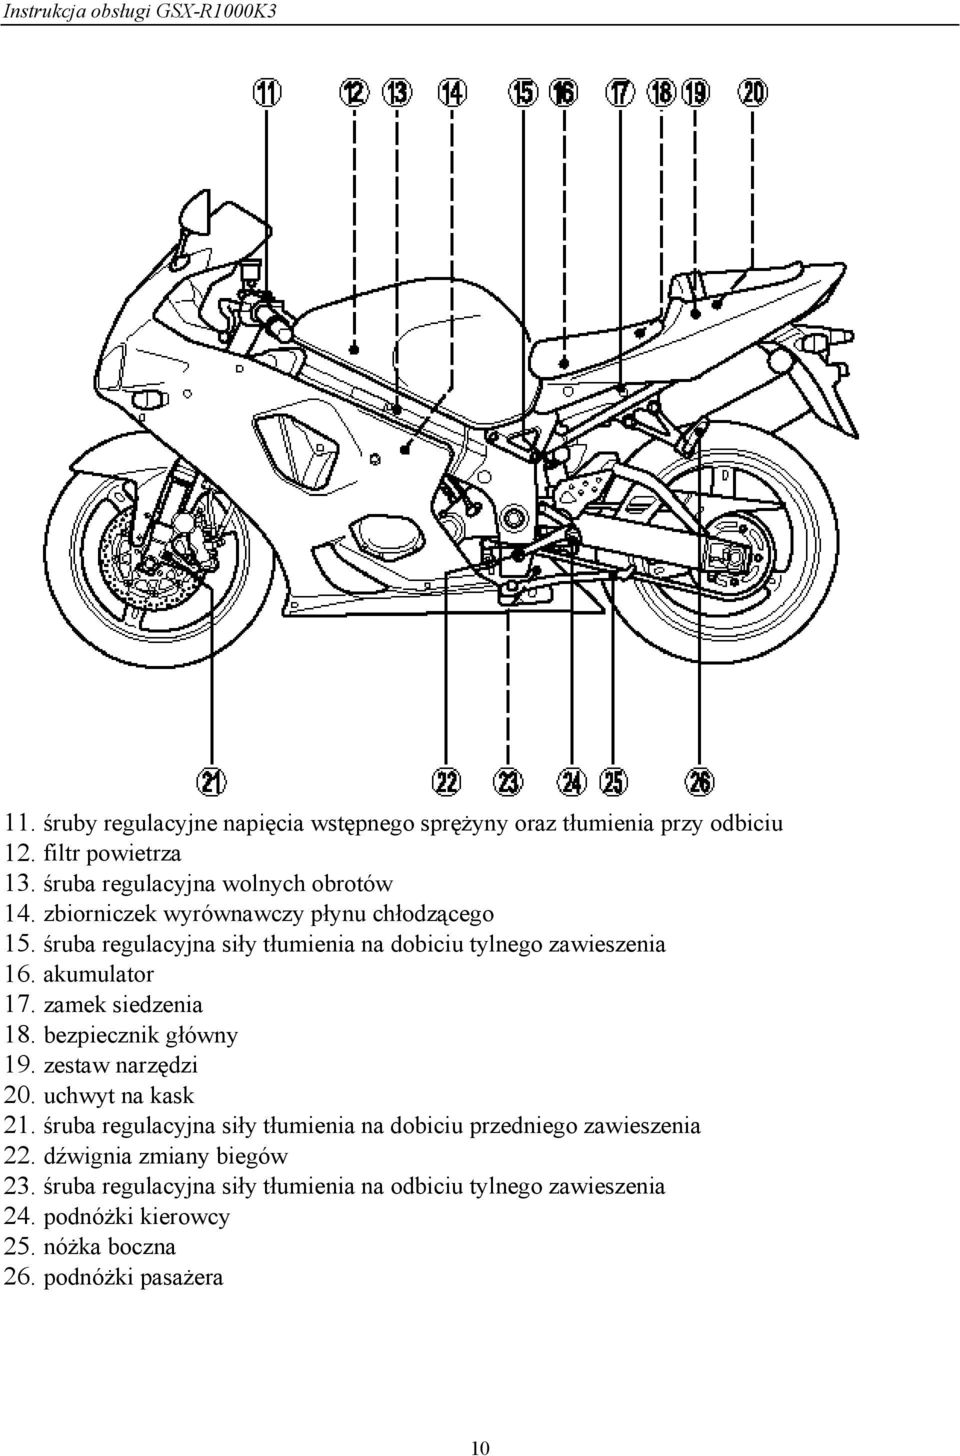 Instrukcja Obsługi Motocykla - Pdf Darmowe Pobieranie